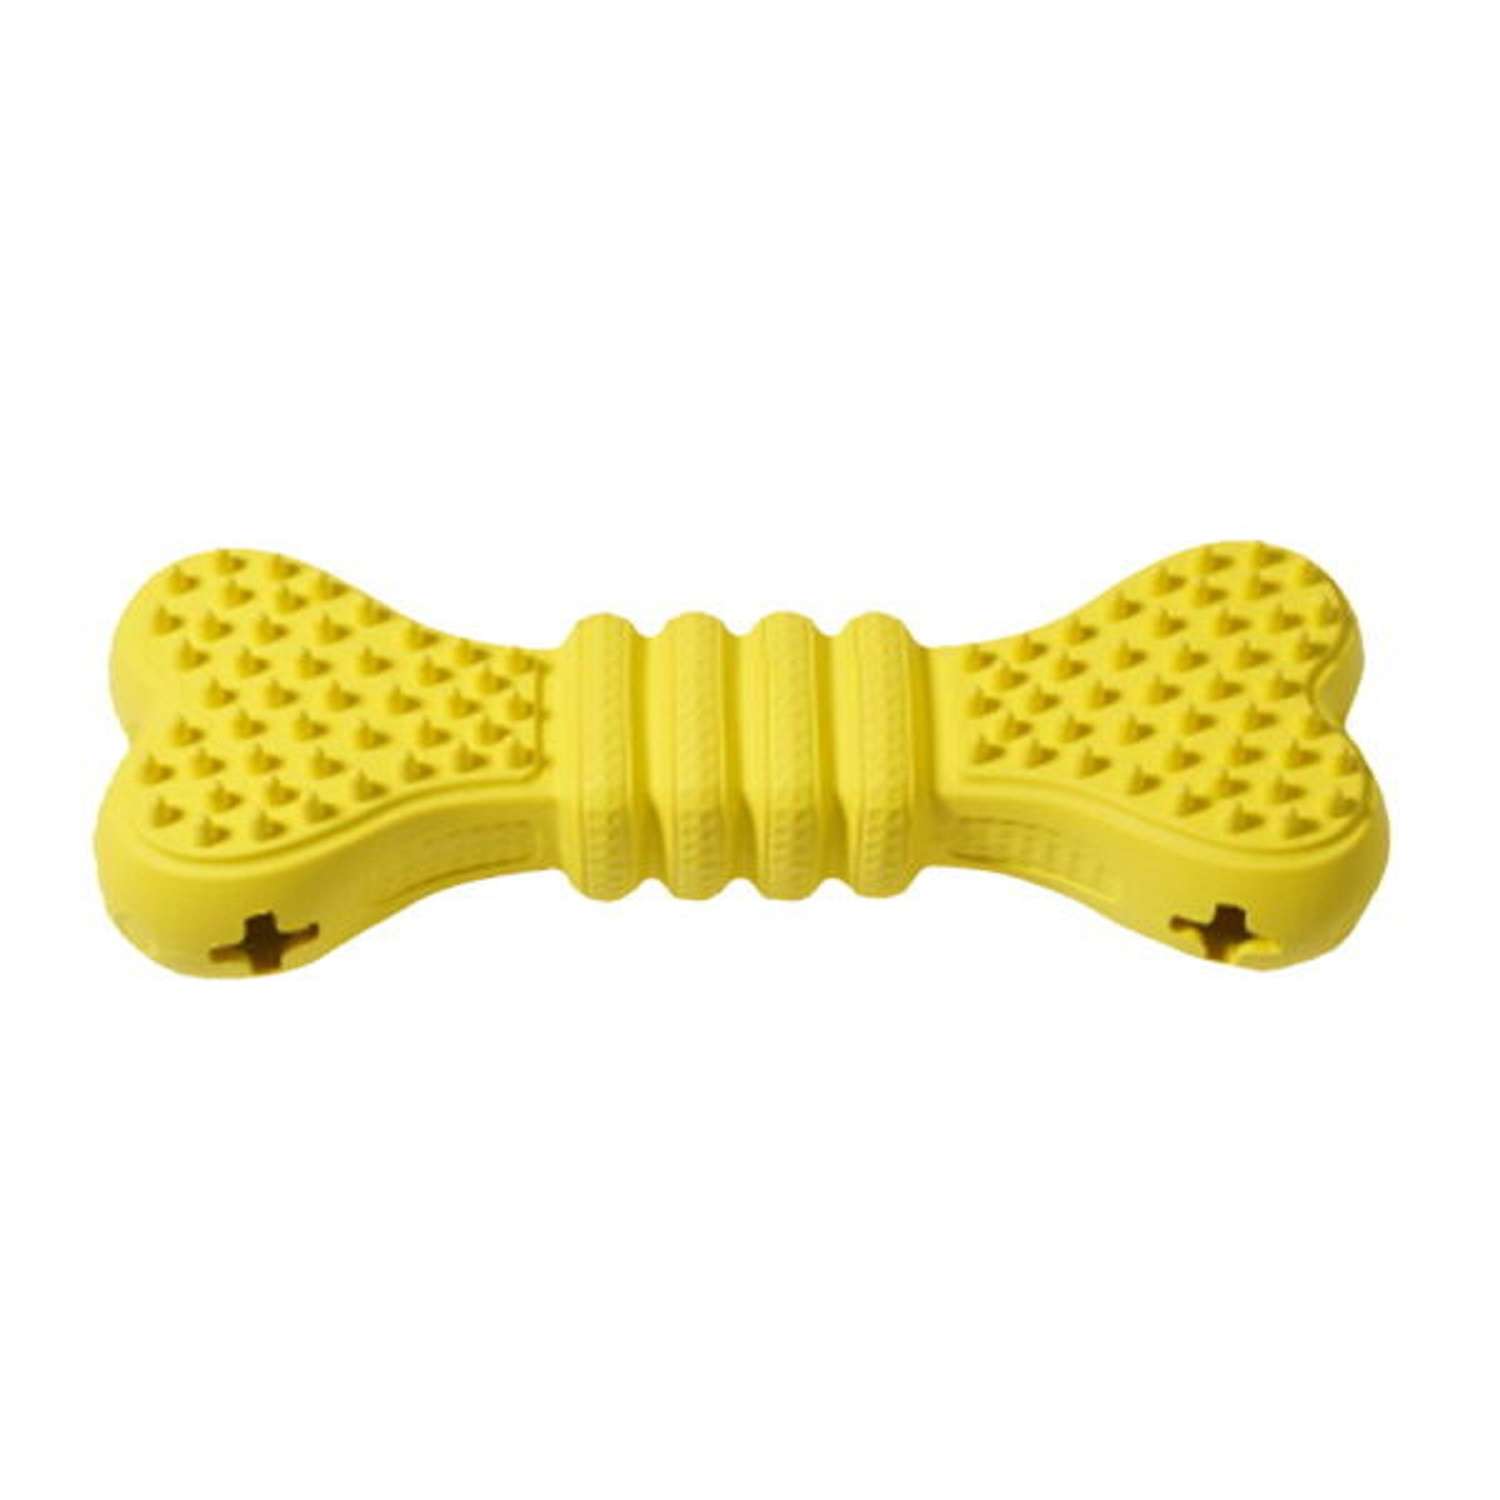 Игрушка для собак Homepet Silver series косточка для чистки зубов с отверстиями для лакомств Желтая 15см - фото 1